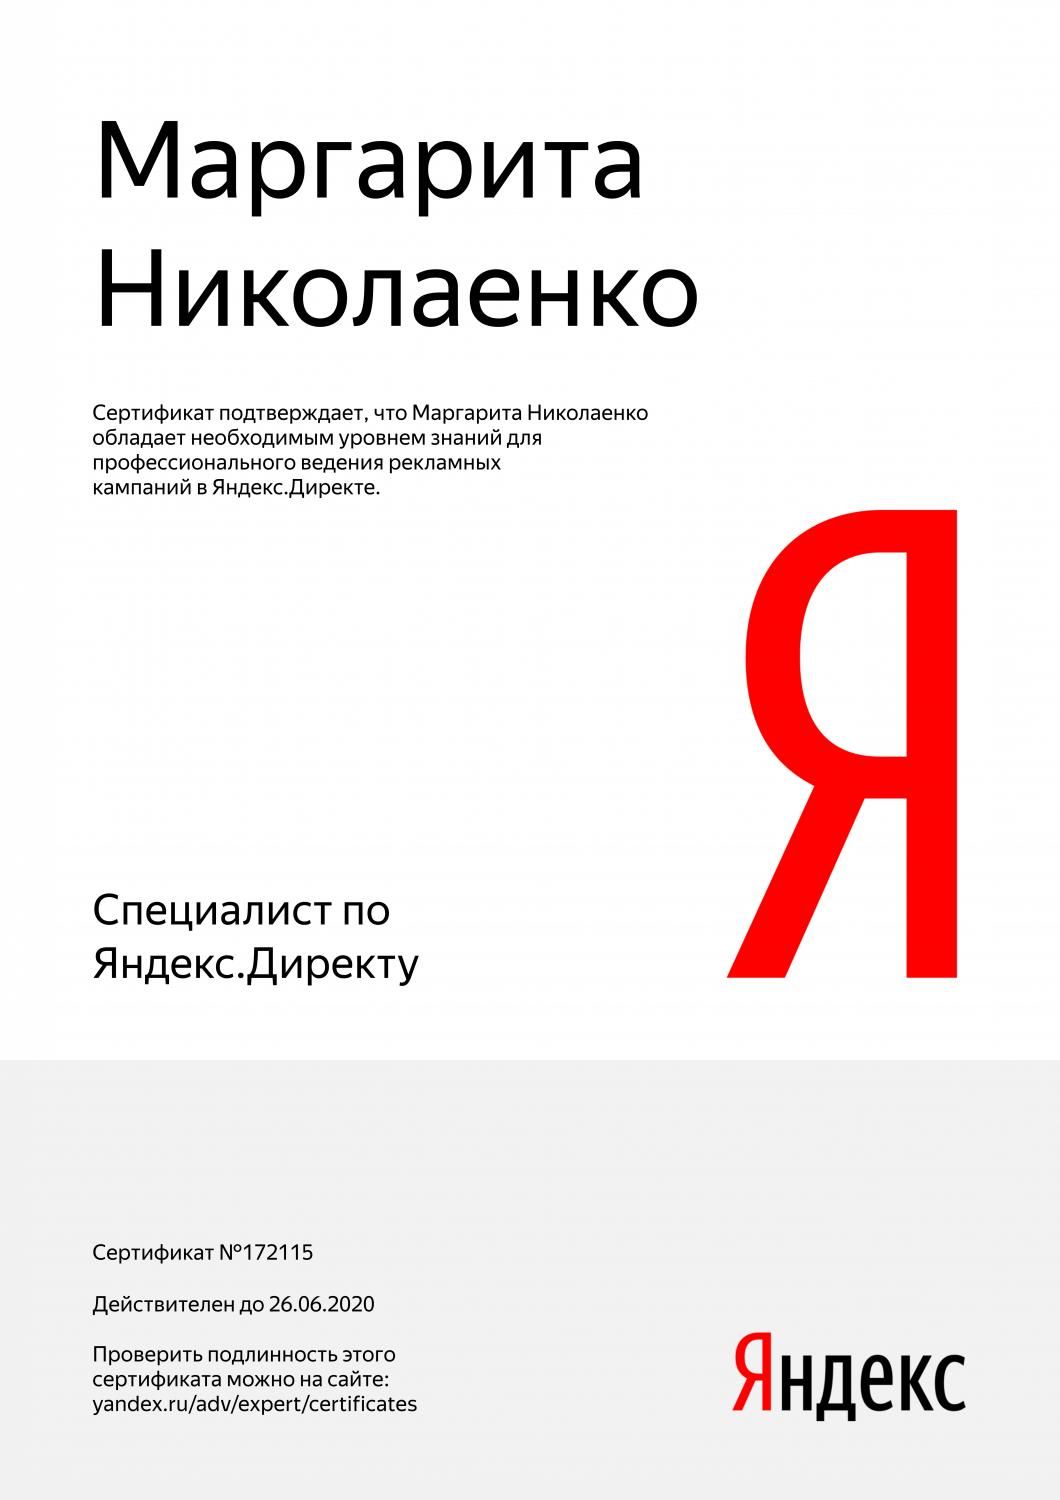 Сертификат специалиста Яндекс. Директ - Николаенко М. в Кемерово